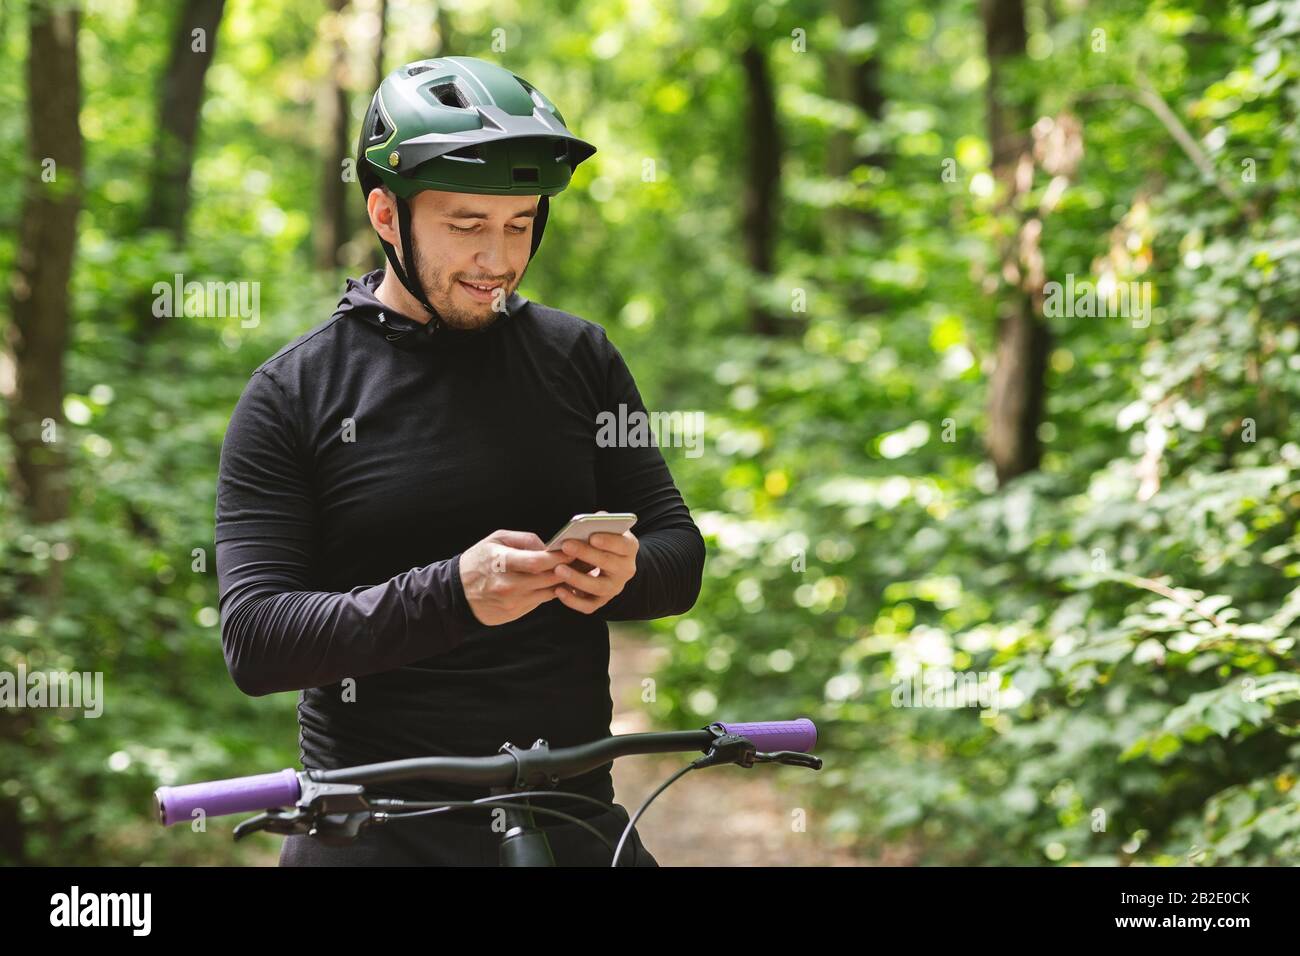 Glücklicher Radfahrer hält Smartphone, prüft Nachrichten Stockfoto